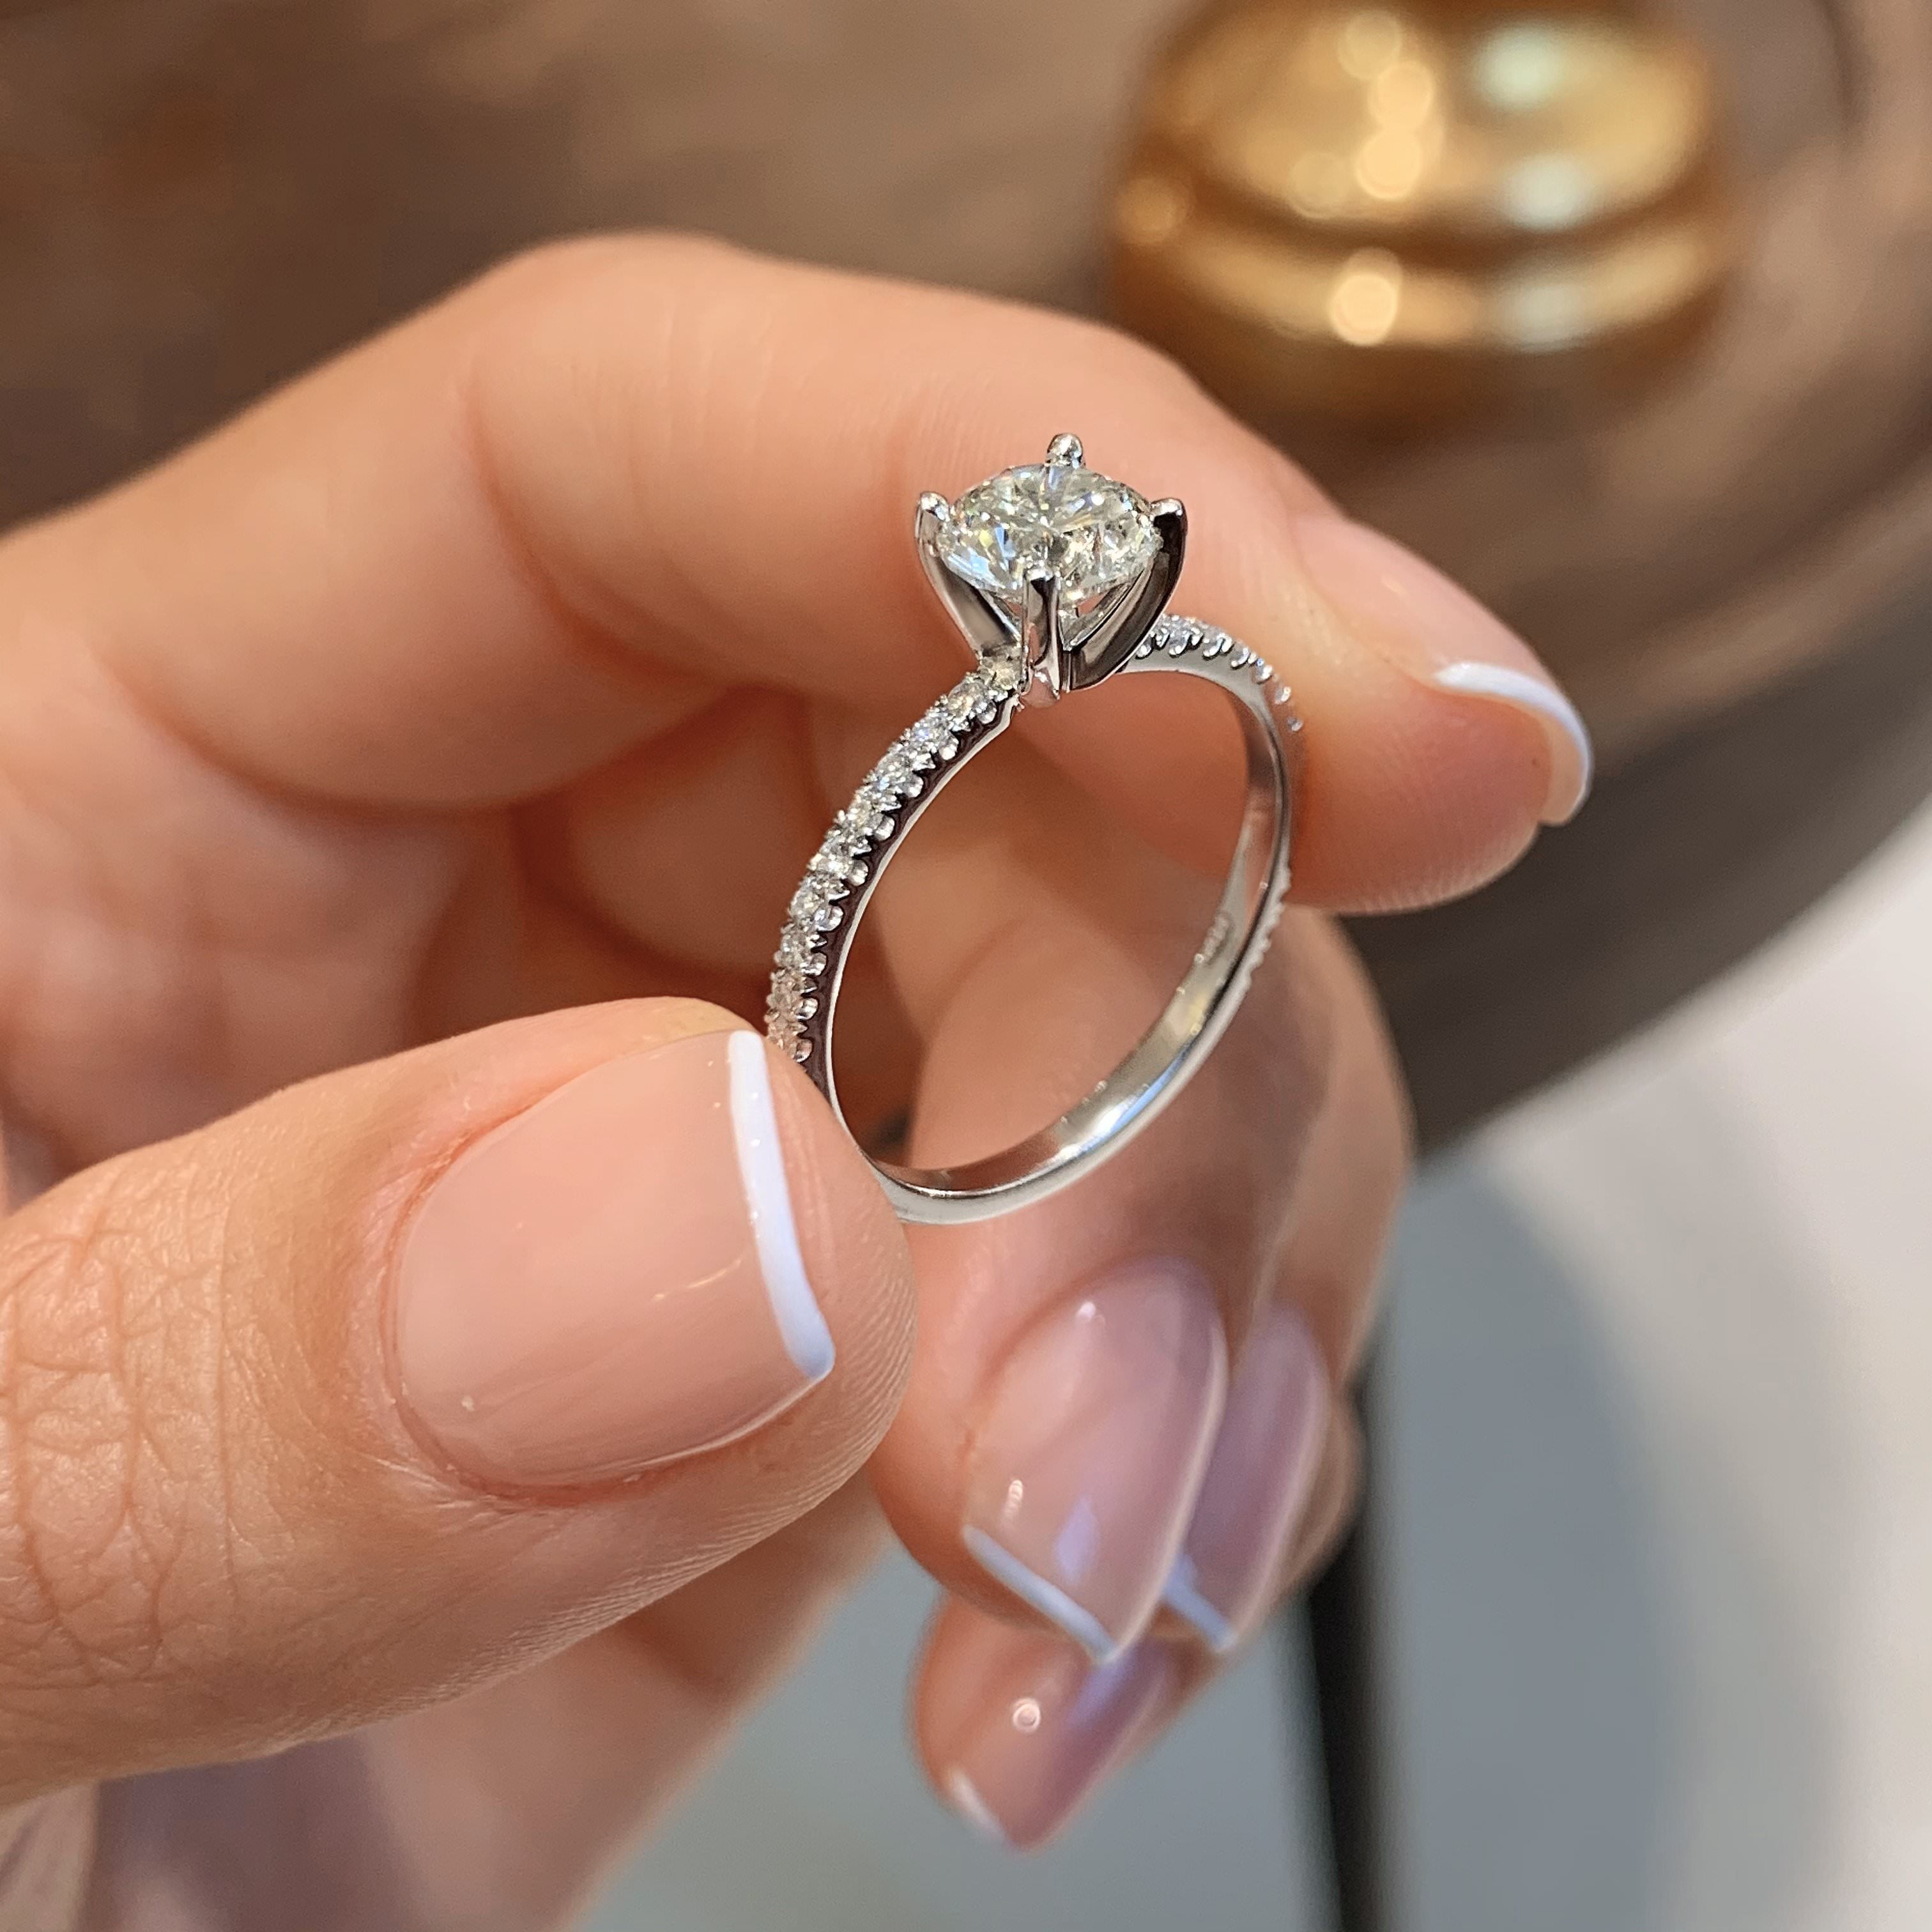 Stephanie Lab Grown Diamond Ring -Platinum, Pave, 1.3 Carat